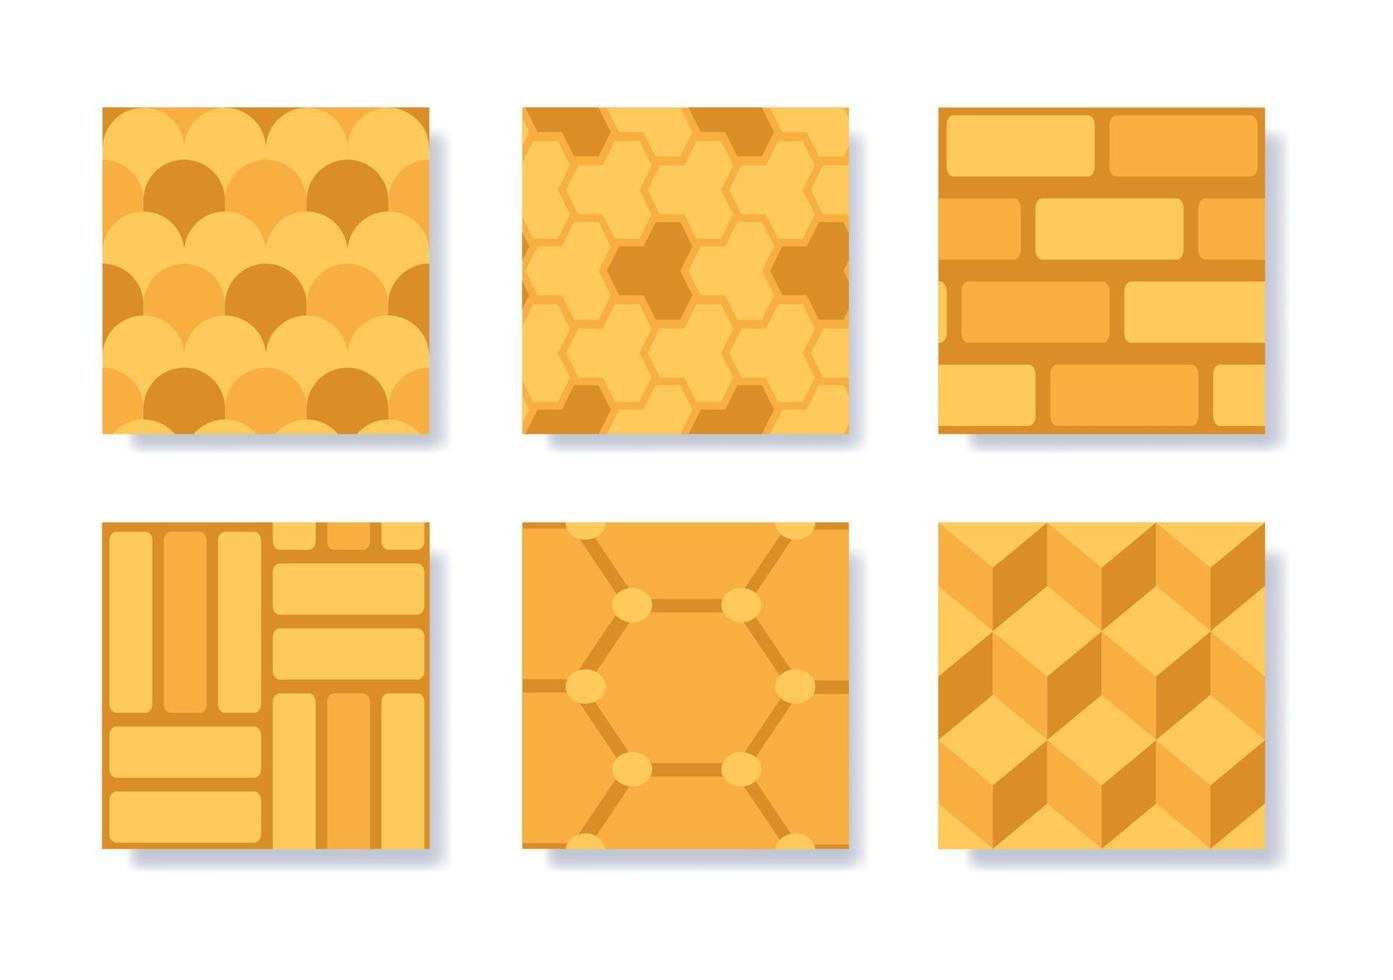 azulejos o pavimentación de patrones sin fisuras de la calle de mosaico geométrico de color en la ilustración de plantilla de dibujo a mano de dibujos animados plana vector